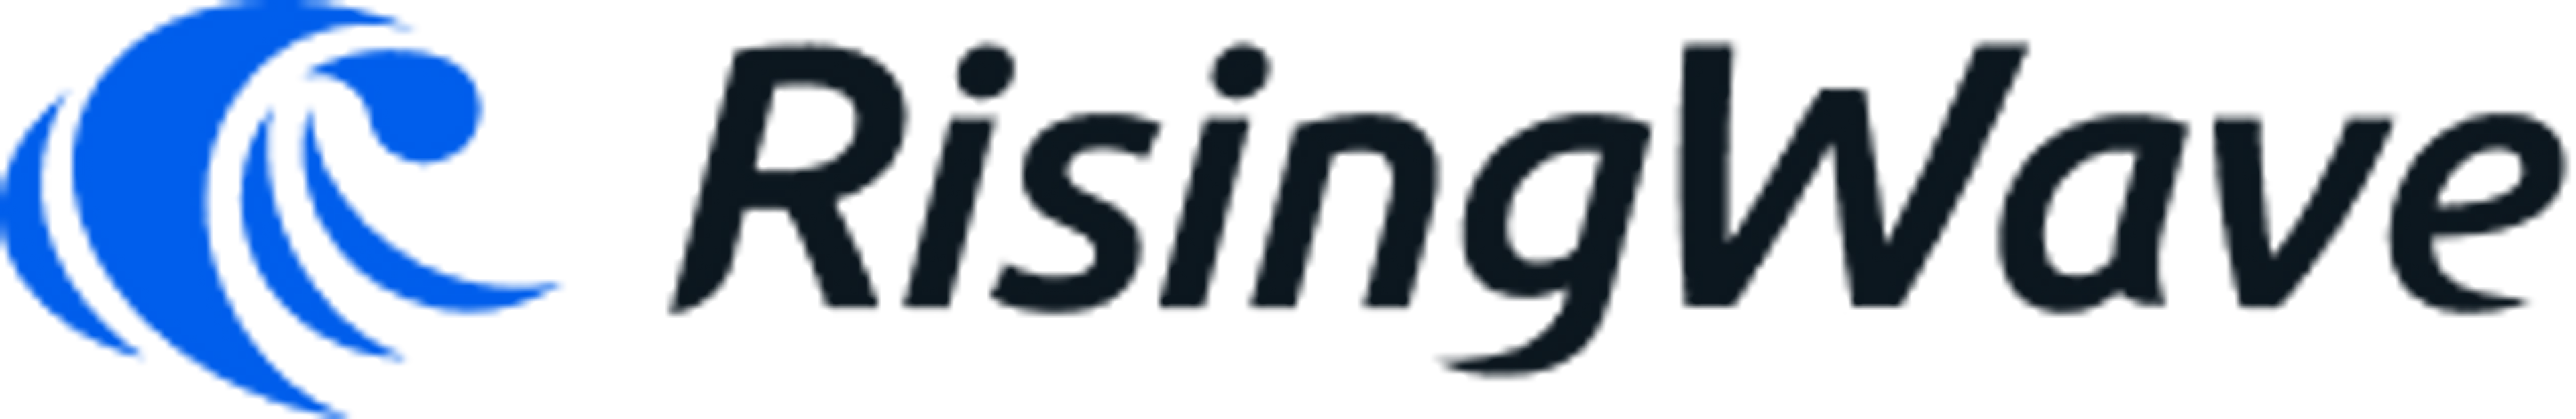 RisingWave logo